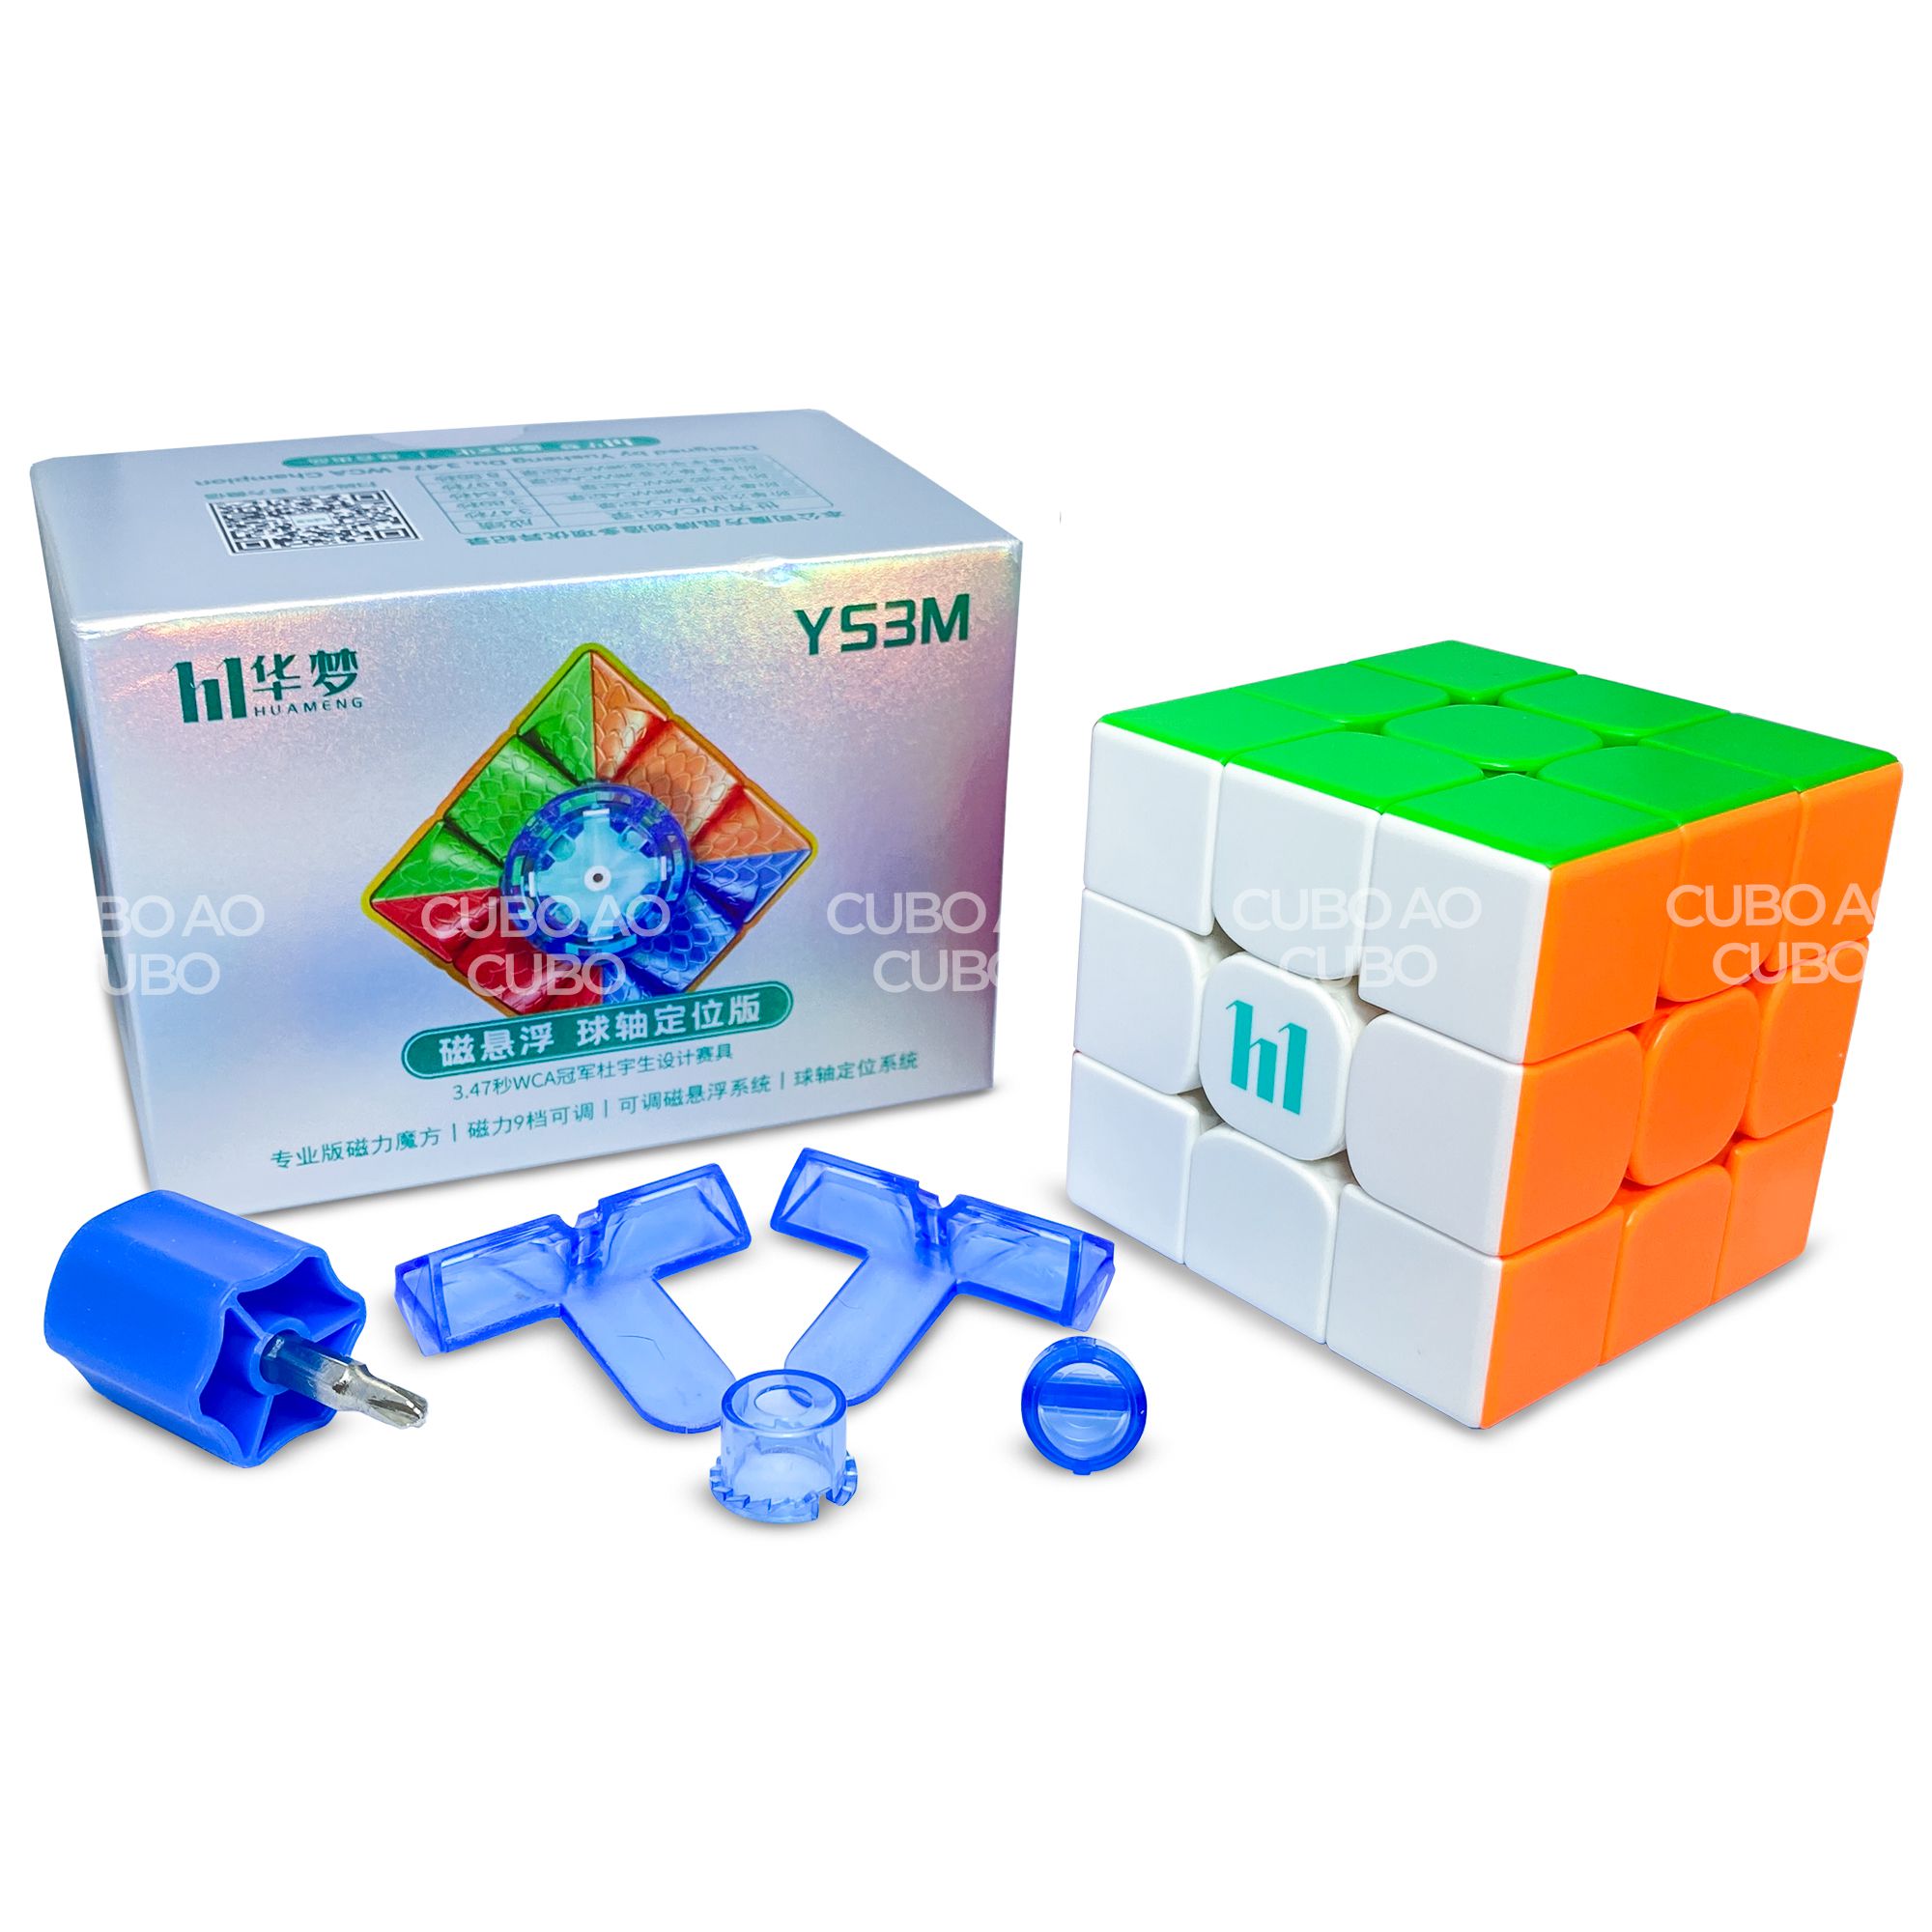 Cubo Magico 3x3x3 Moyu Super RS3M Magnetico - Cubo Store - Sua Loja de Cubo  Magico Online